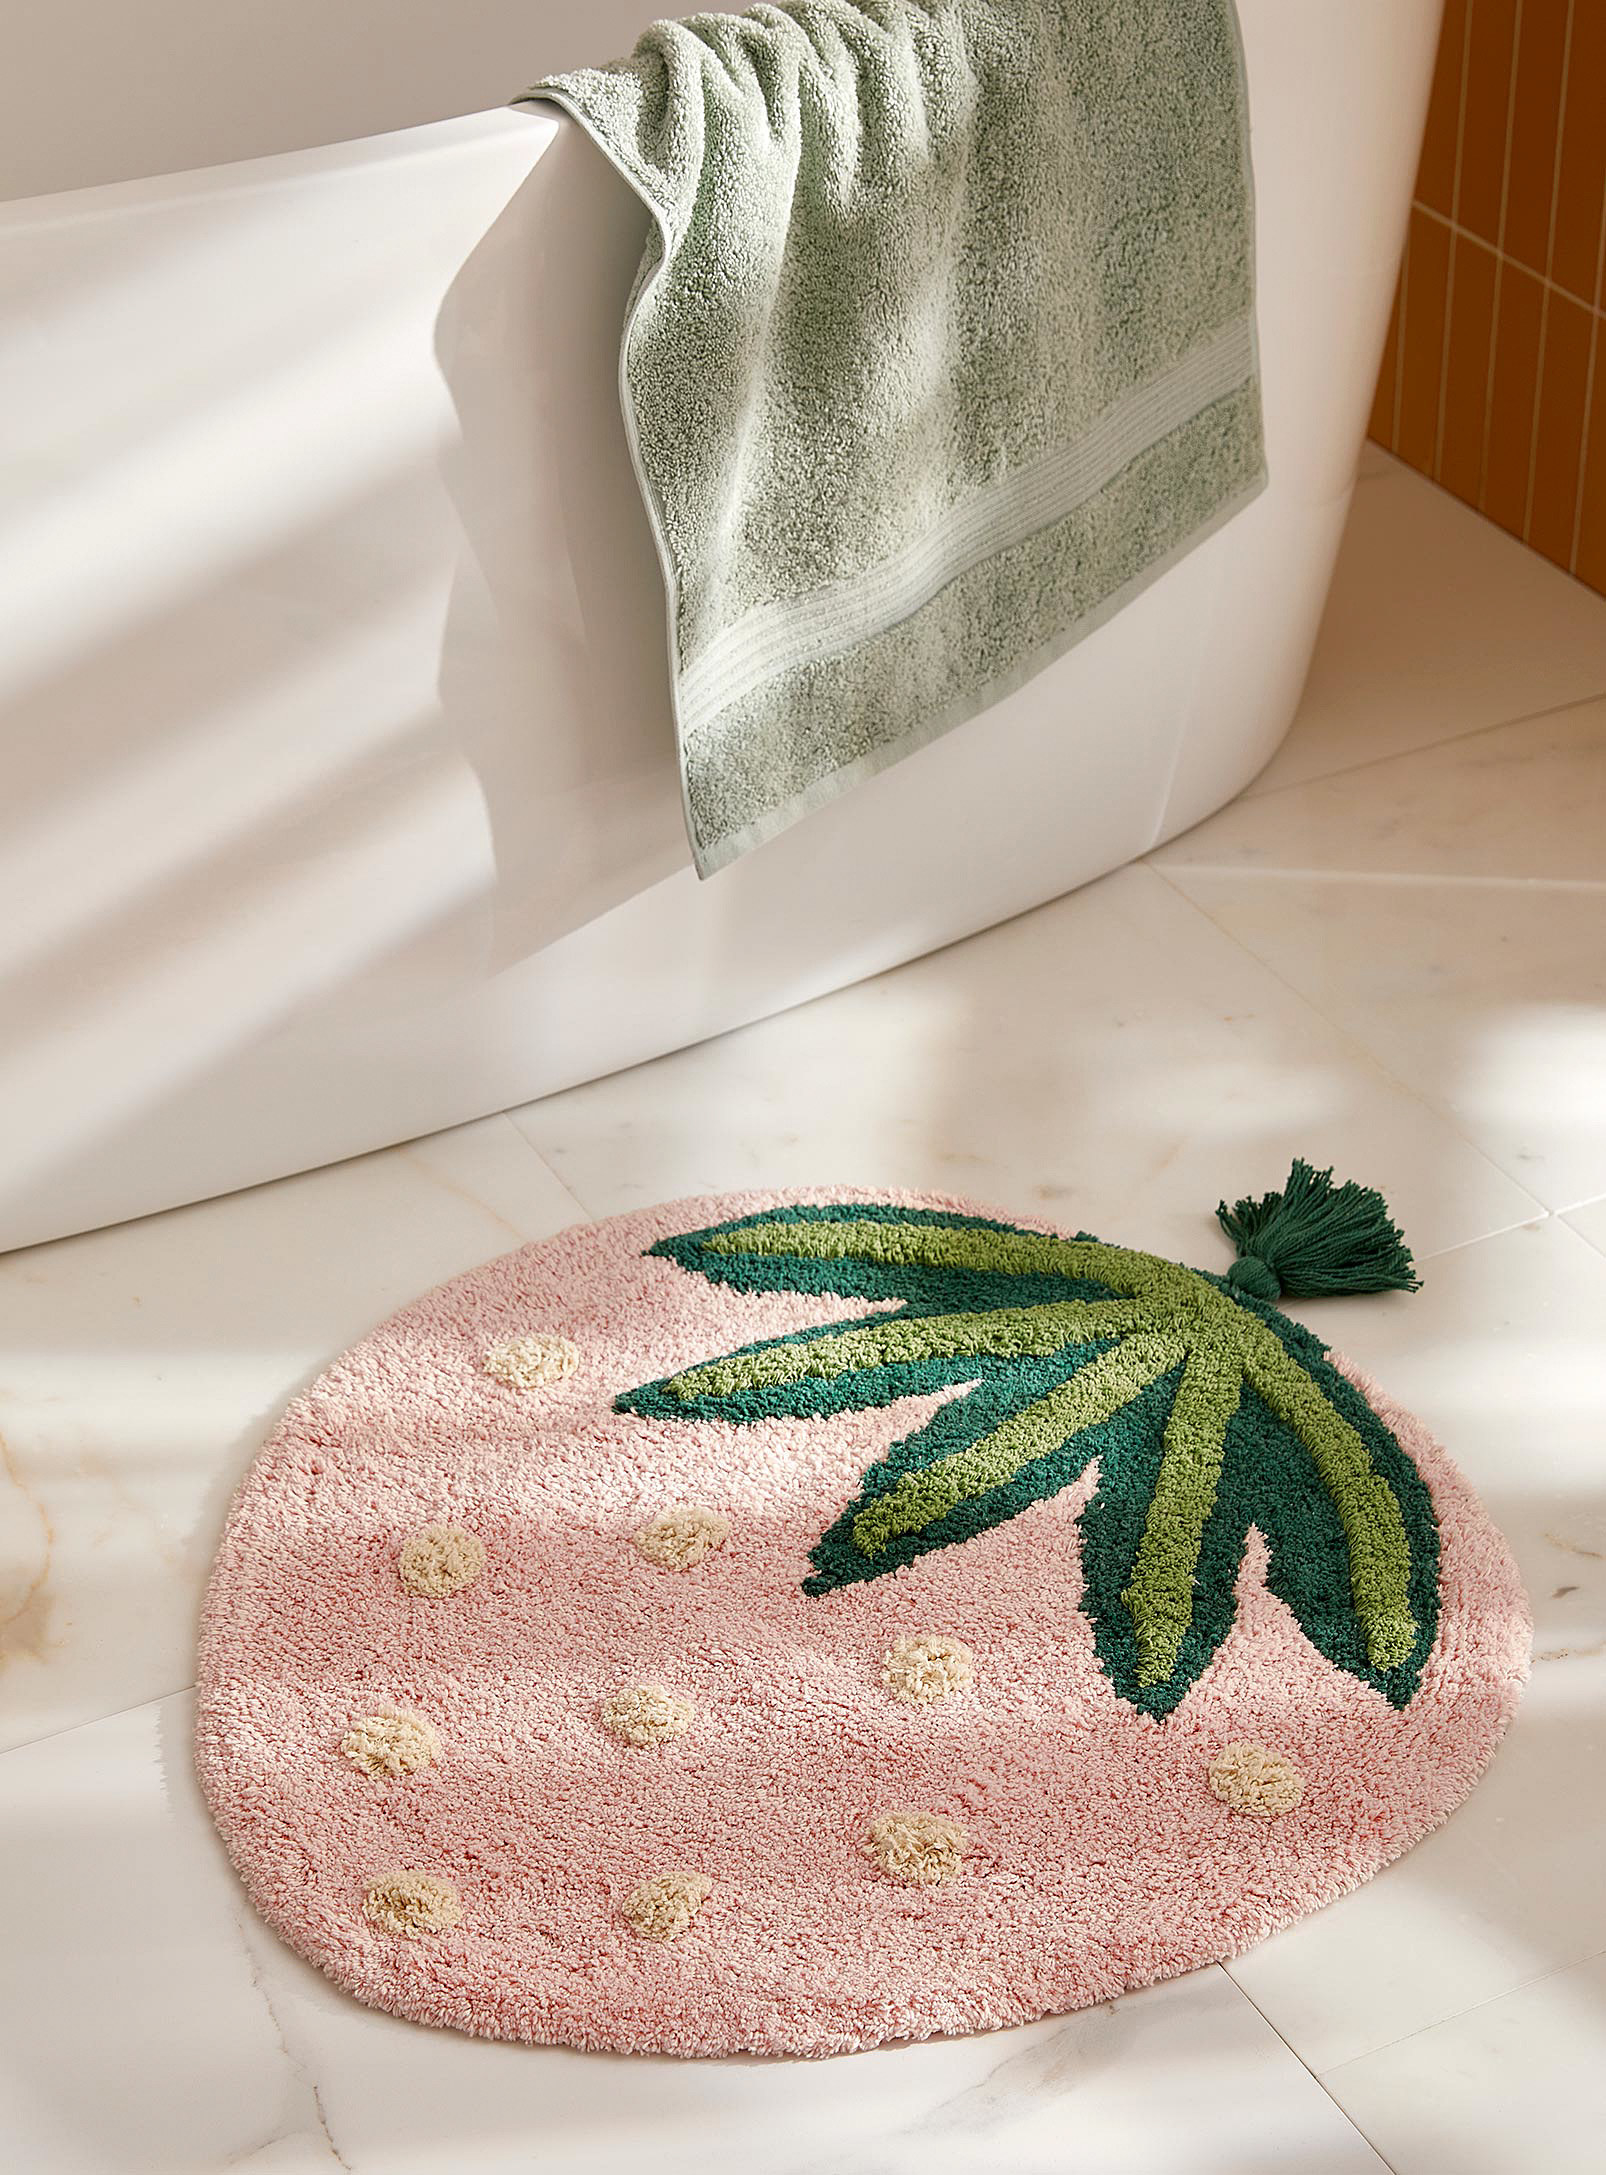 the bath mat on the floor of a bathroom